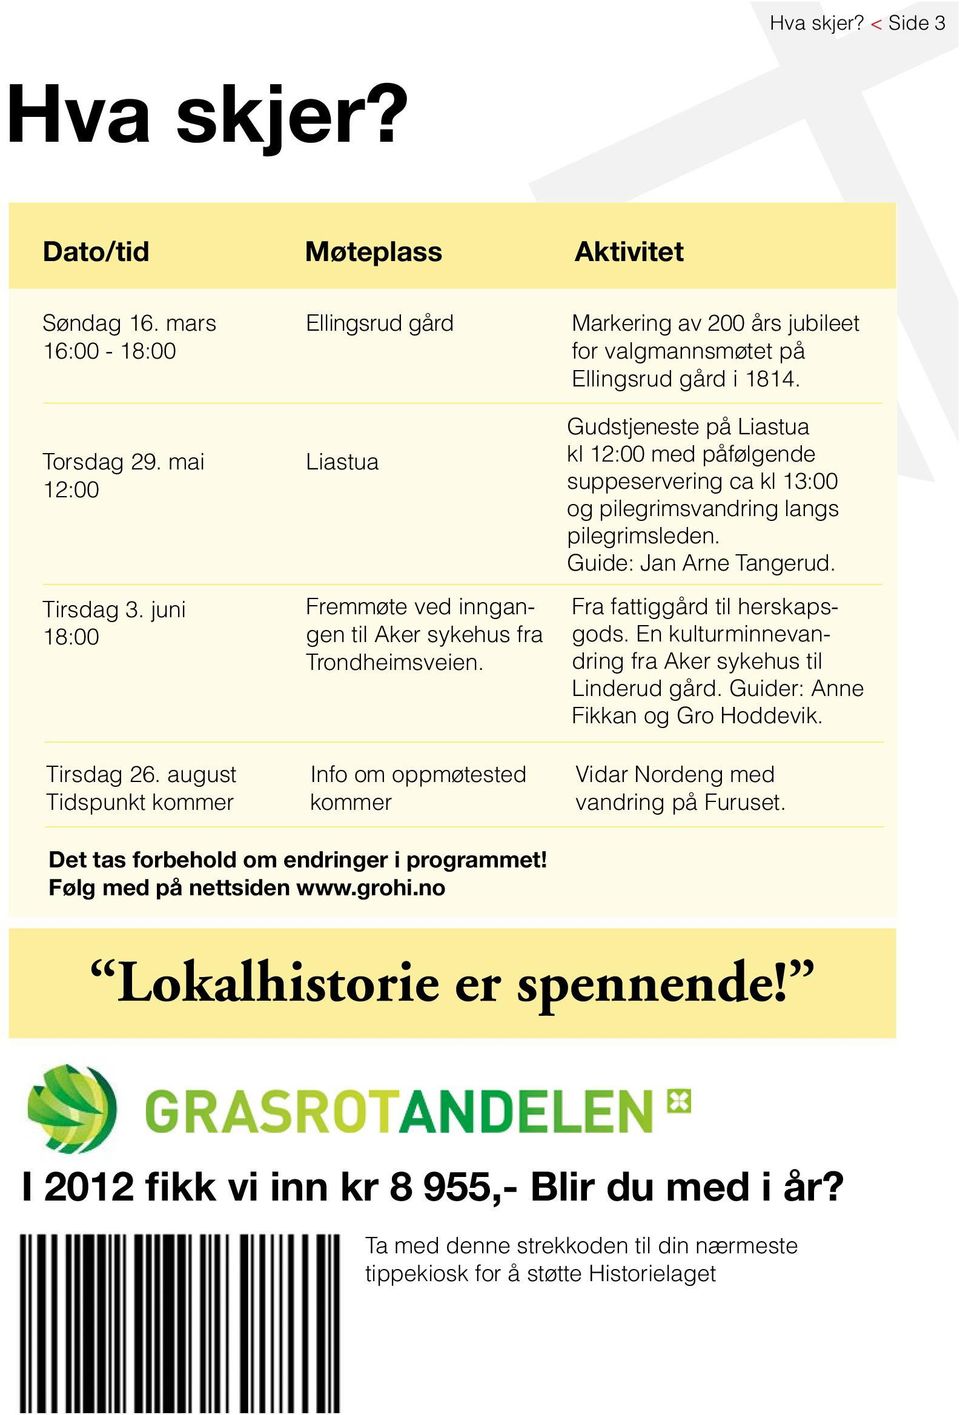 Info om oppmøtested kommer Markering av 200 års jubileet for valgmannsmøtet på Ellingsrud gård i 1814.